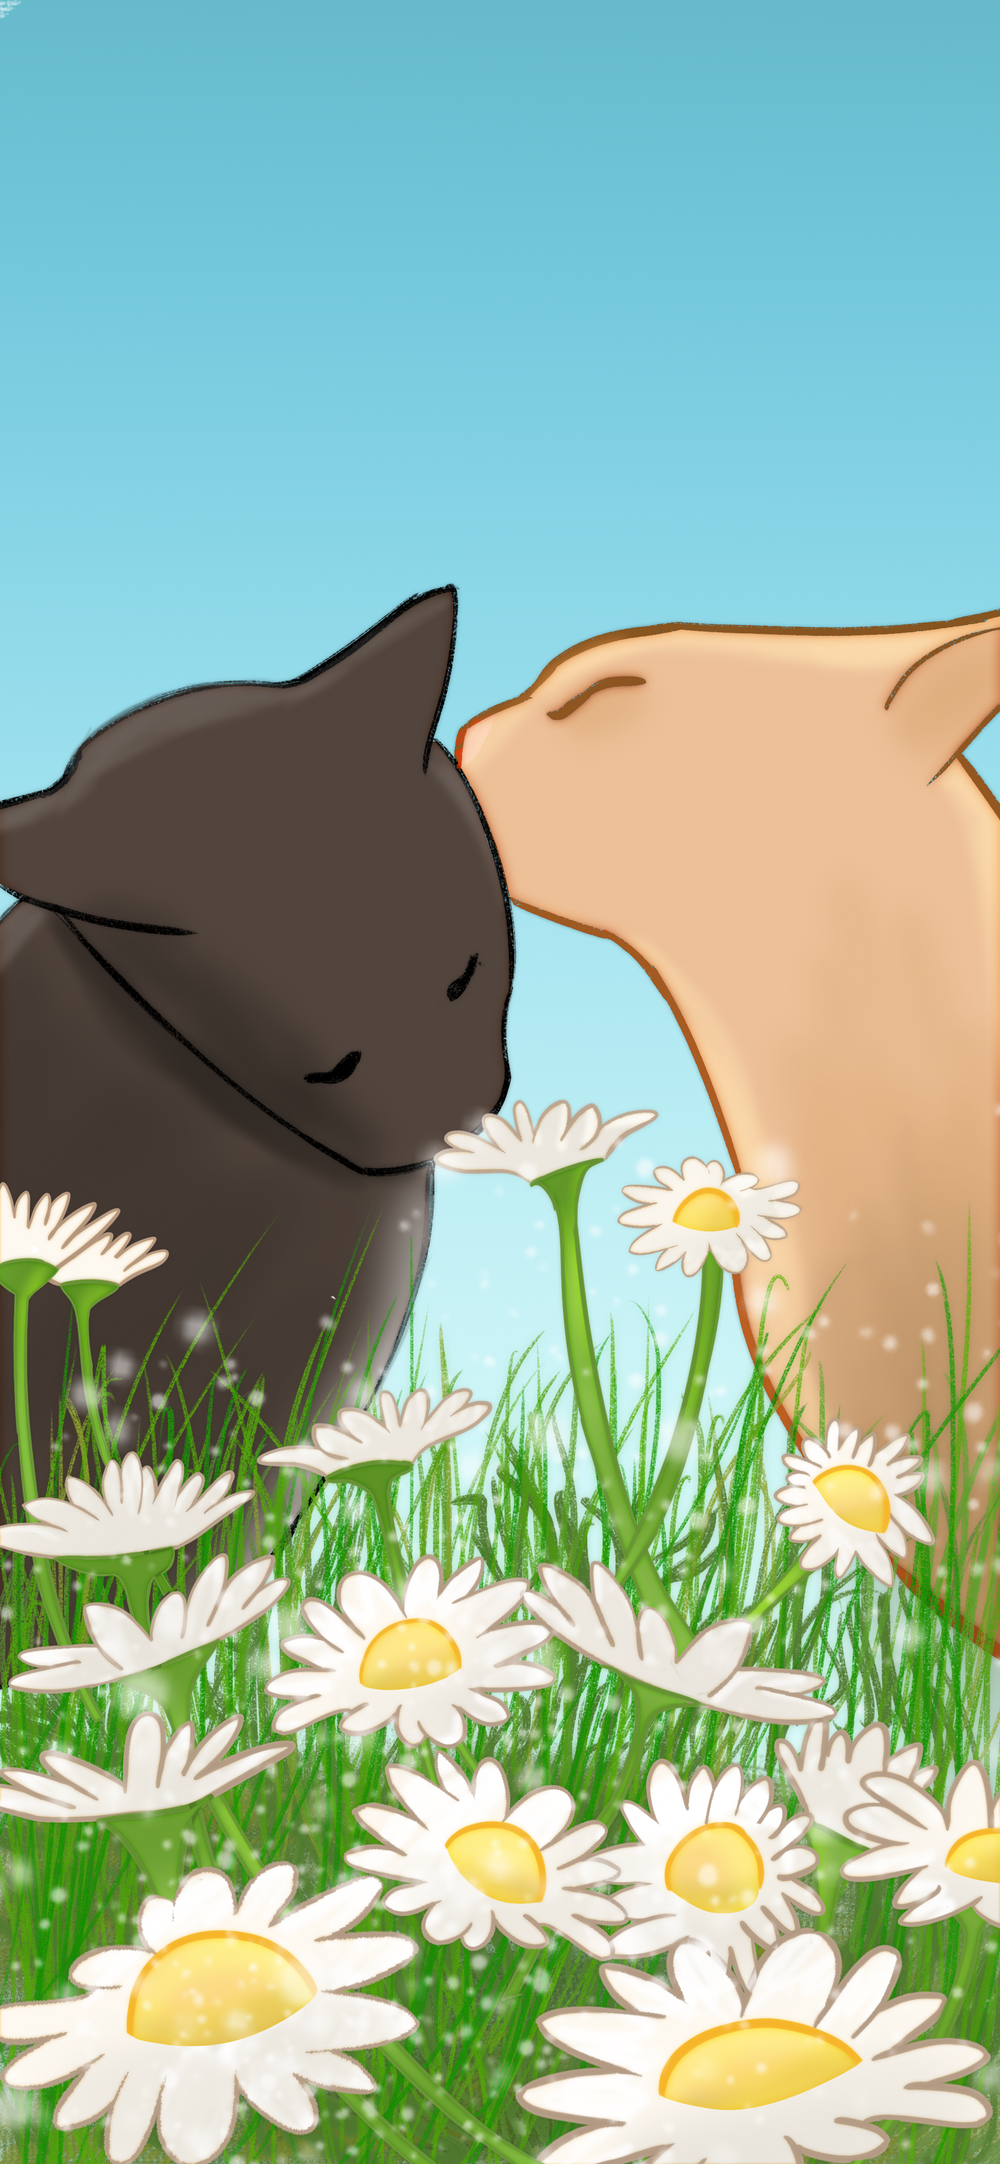 L'arrière plan du site: un dessin de deux chats s'embrassant, avec des fleurs au premier plan. Le ciel est bleu.